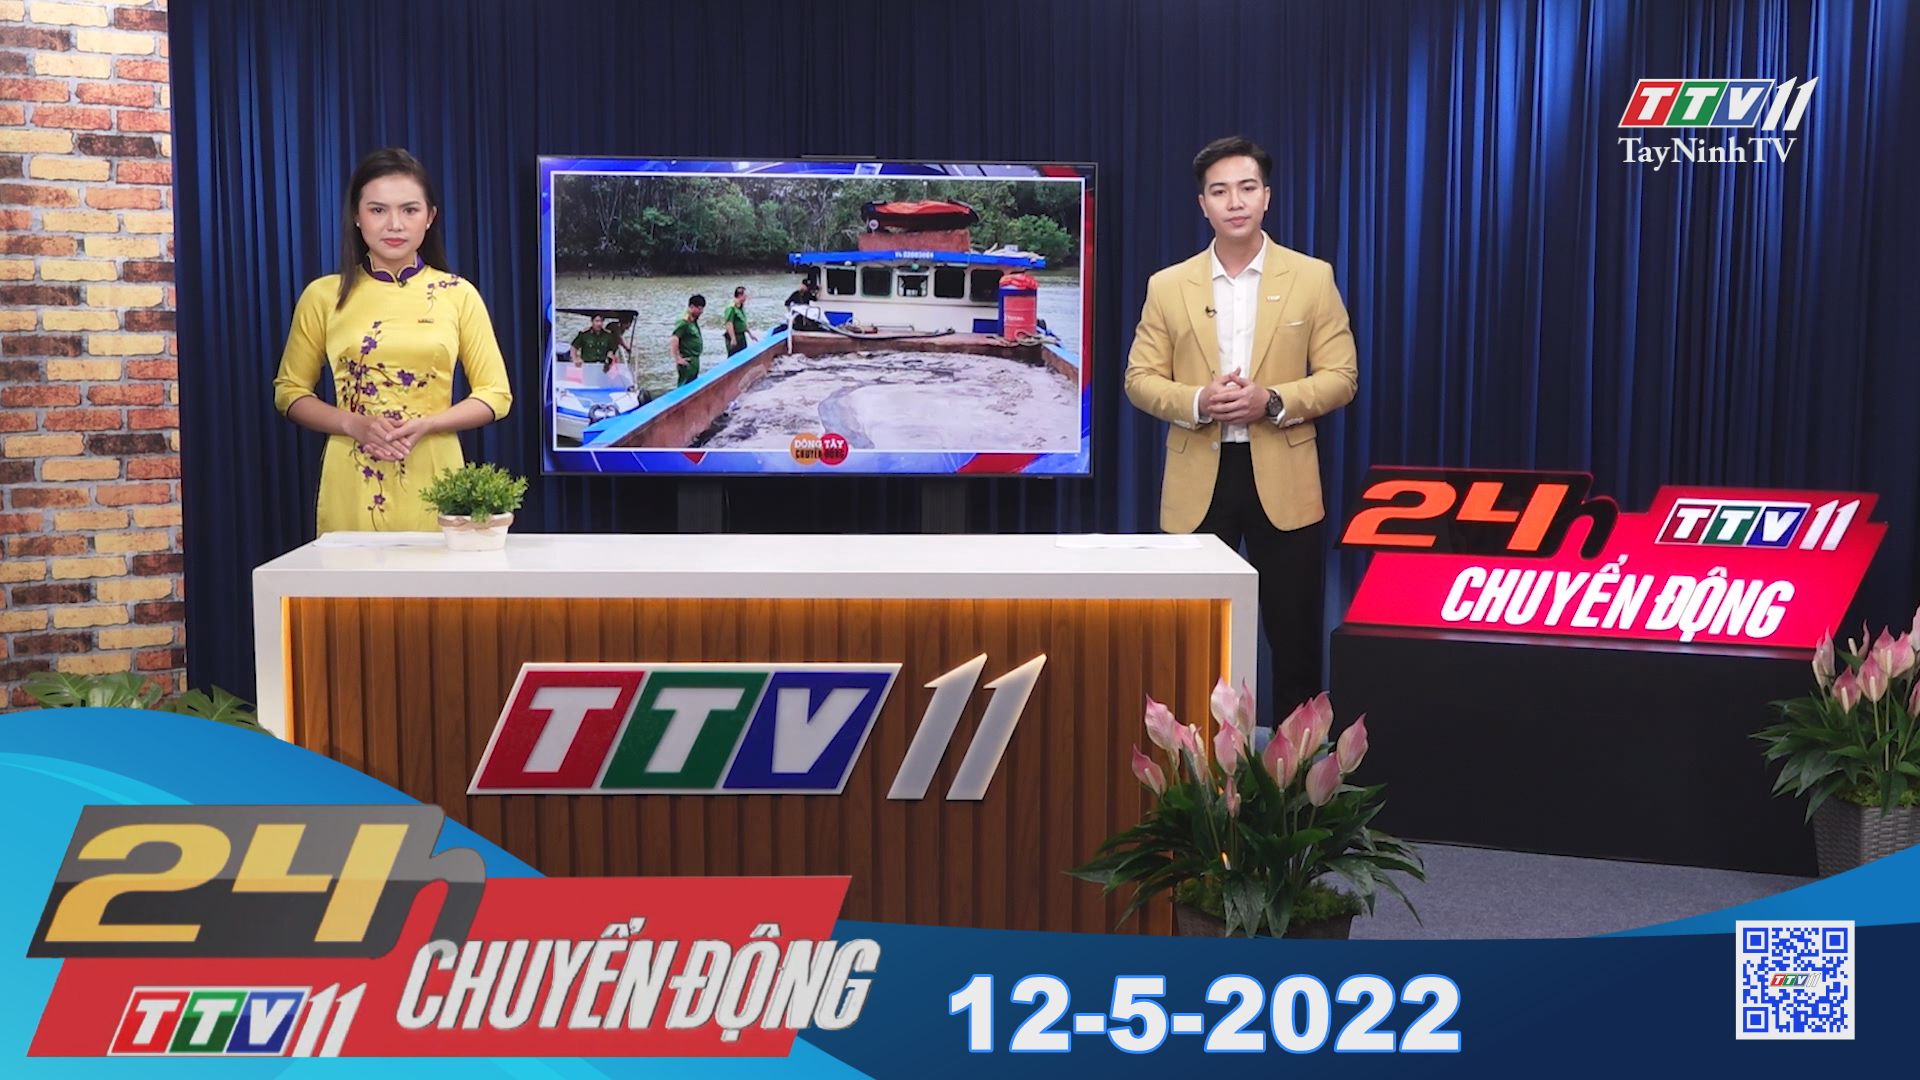 24h Chuyển động 12-5-2022 | Tin tức hôm nay | TayNinhTV